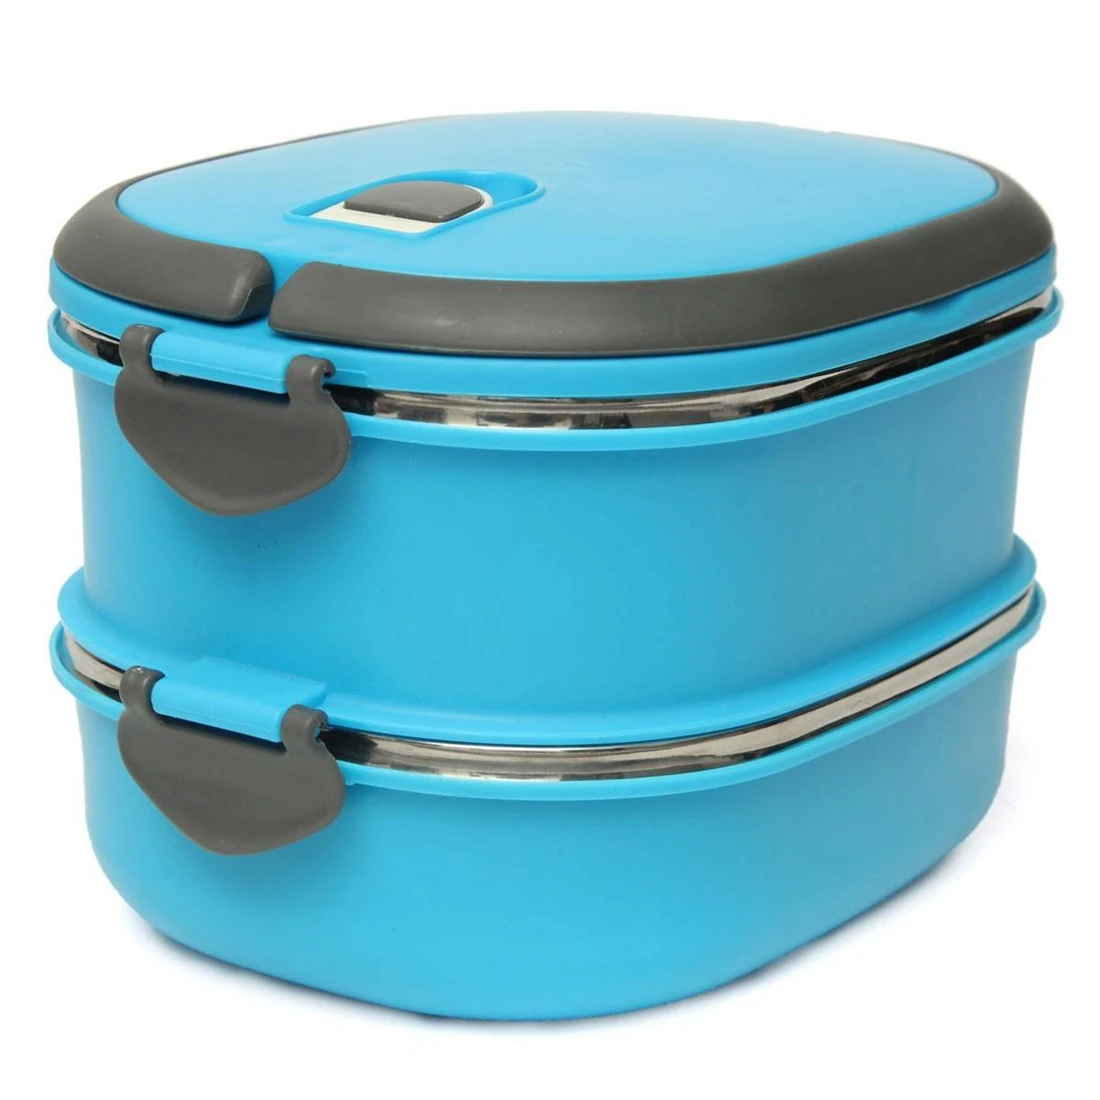 Горячая-компактная коробка для еды из нержавеющей стали два слоя Warmbox Bento box для пикника коробка для закусок доза чая контейнер для хранения продуктов